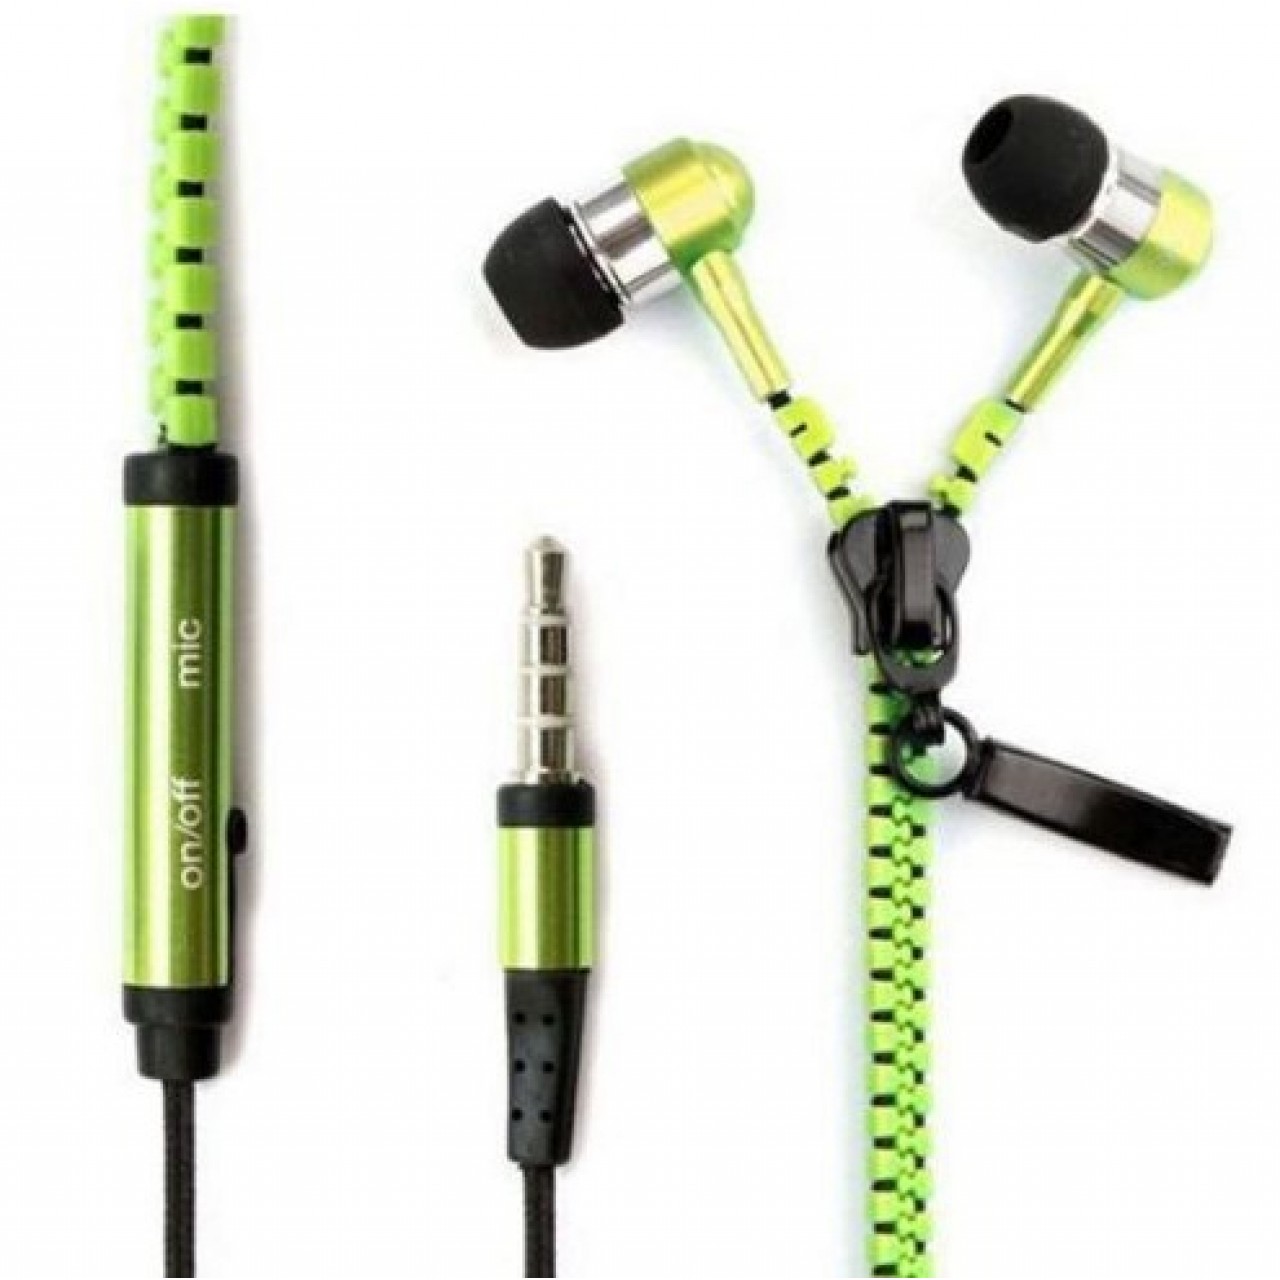 Ακουστικά Handsfree με φερμουάρ In-ear καλώδιο και μικρόφωνο 3.5mm - Πράσινο - OEM